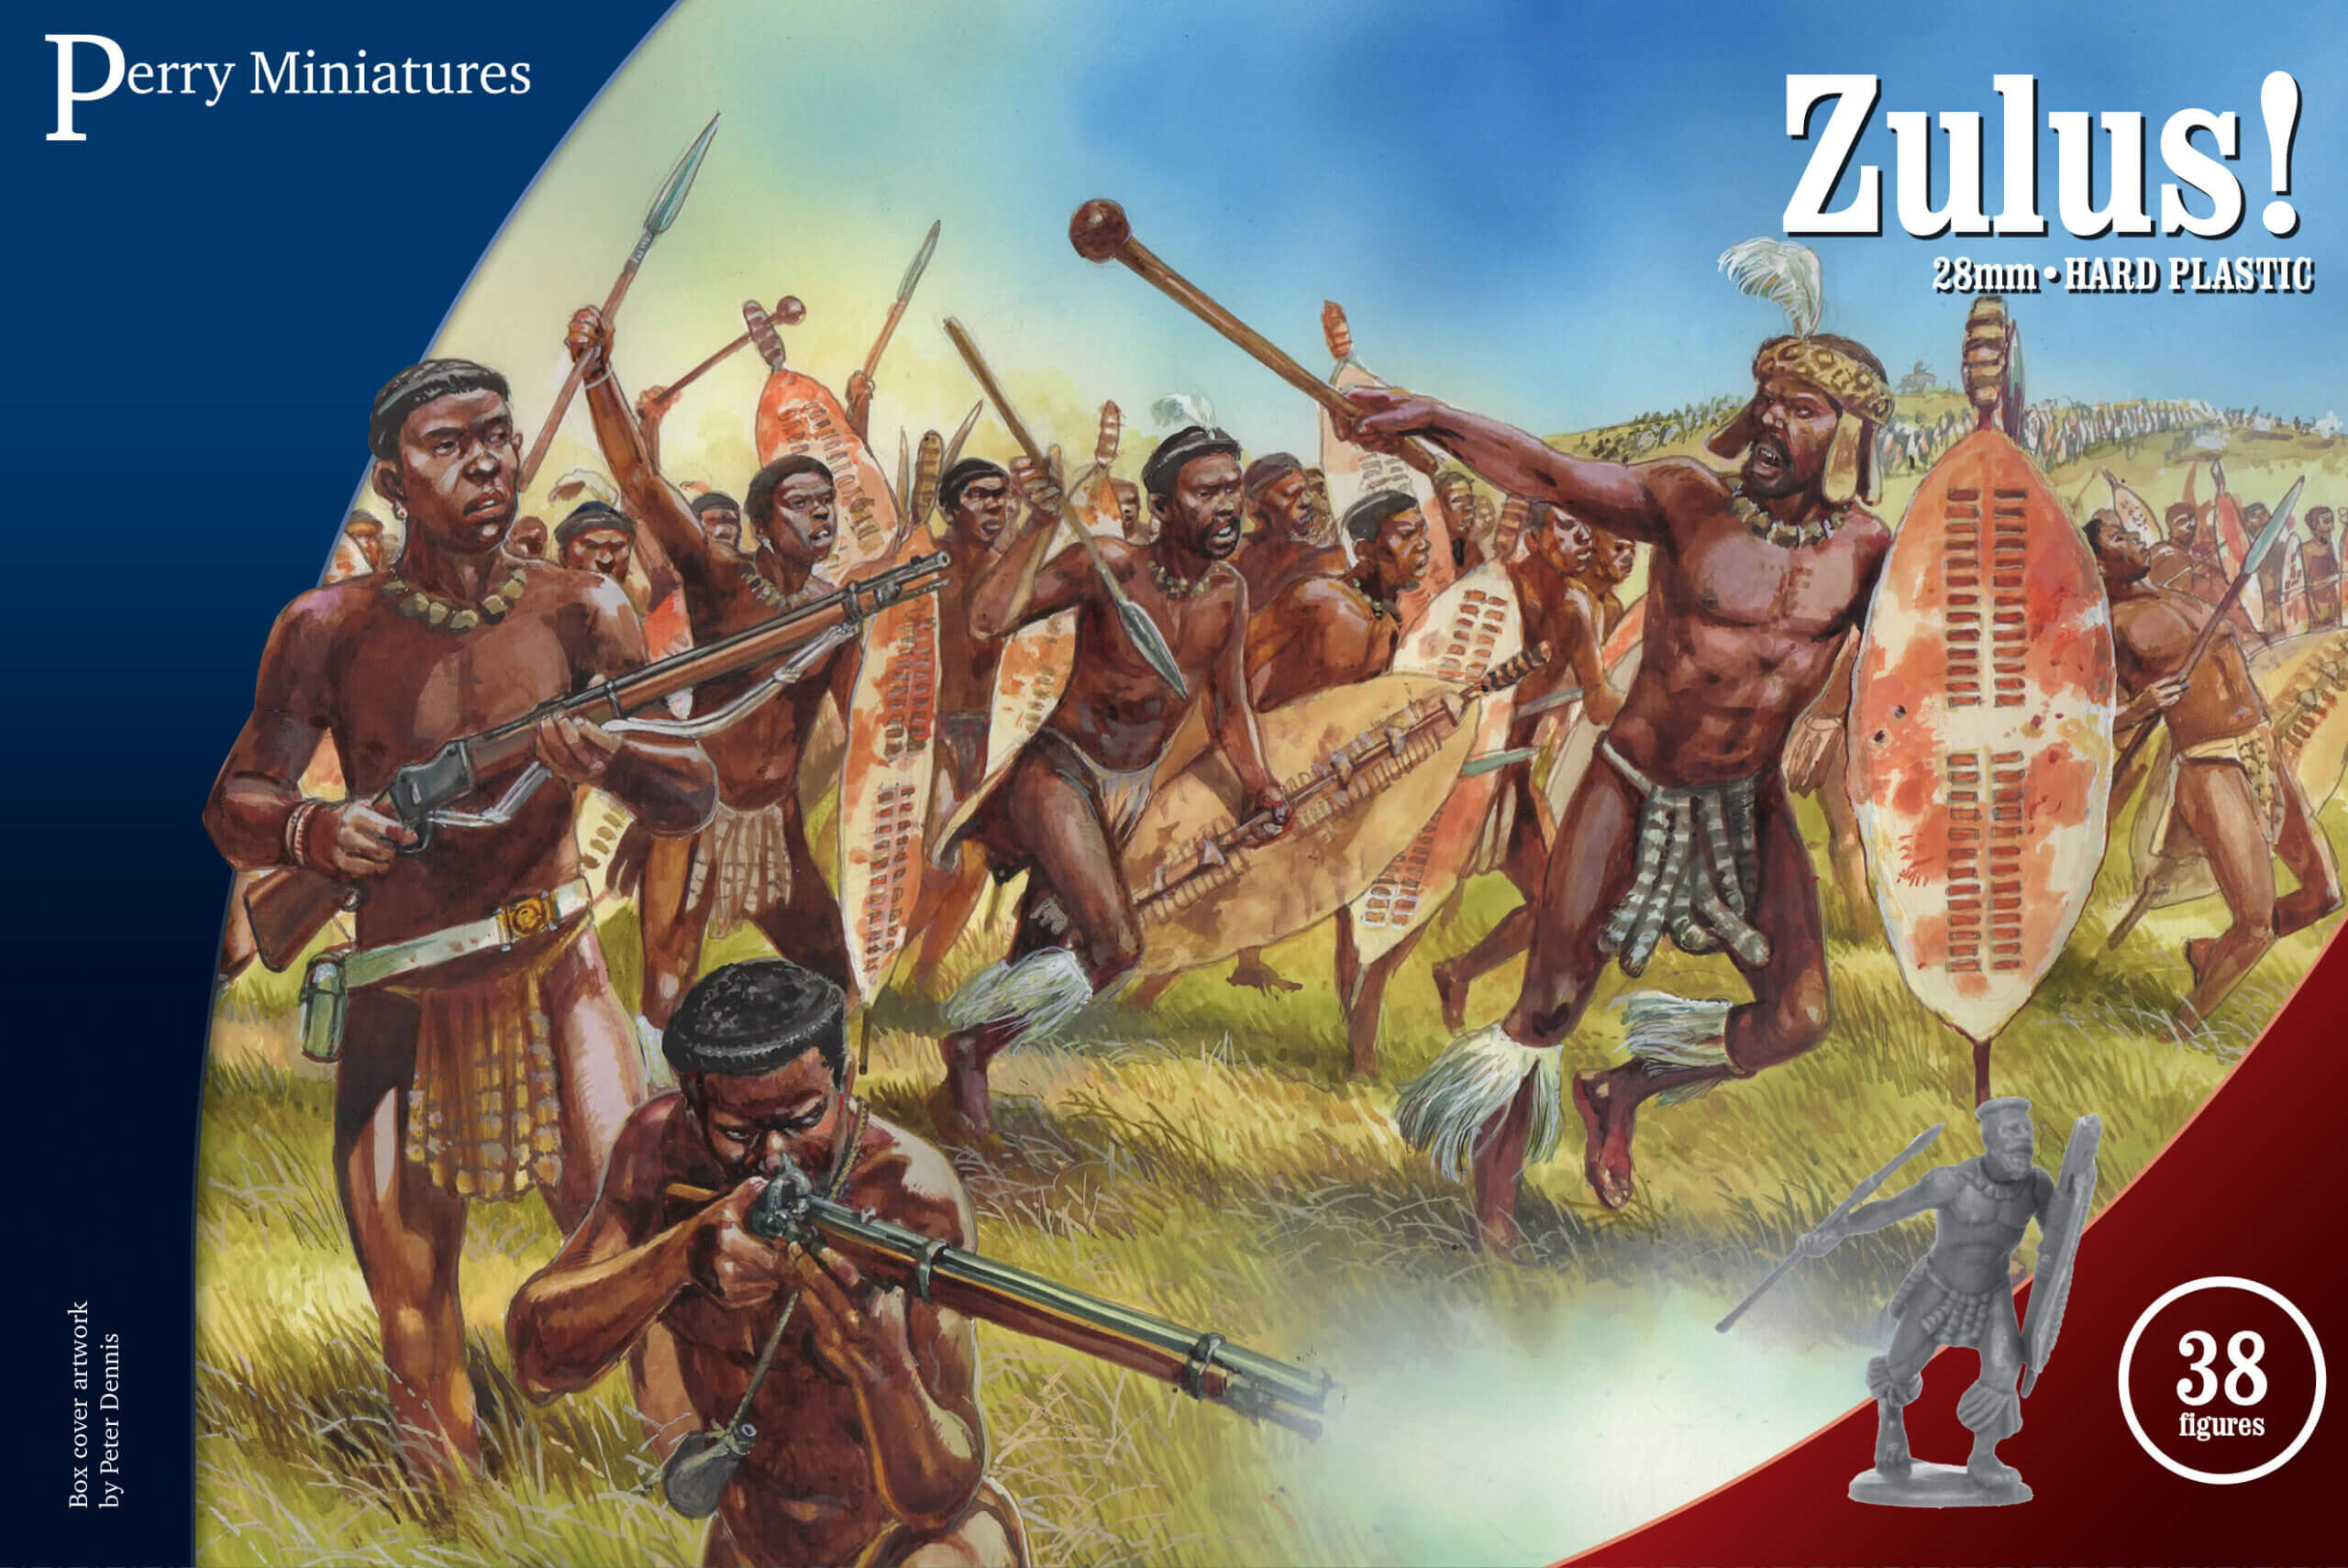 VLW 41 Zulus